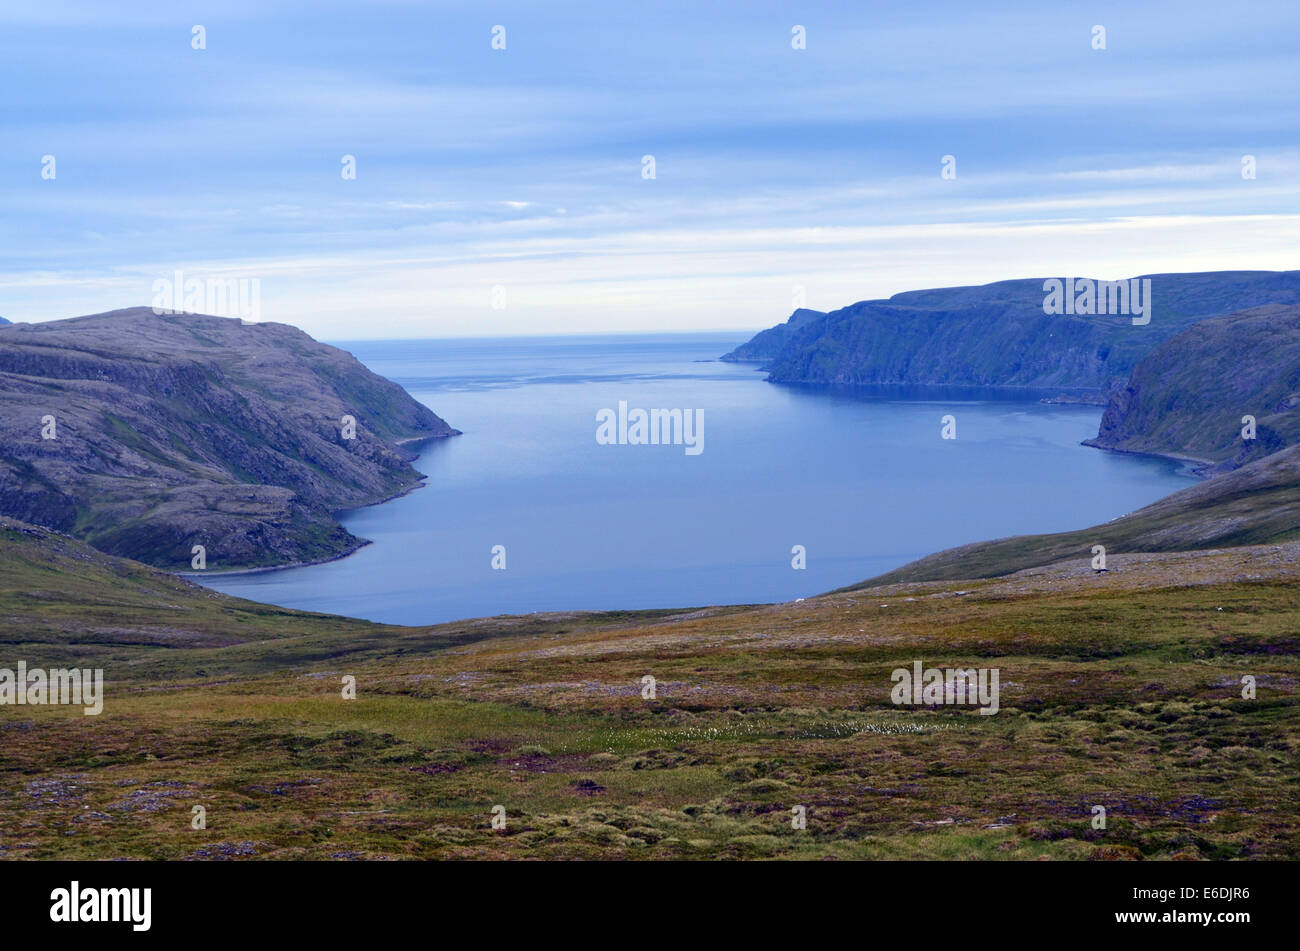 Le colline e la campagna attorno a Tromso. Ciò che appare come un grande lago è in realtà il mare. Foto Stock